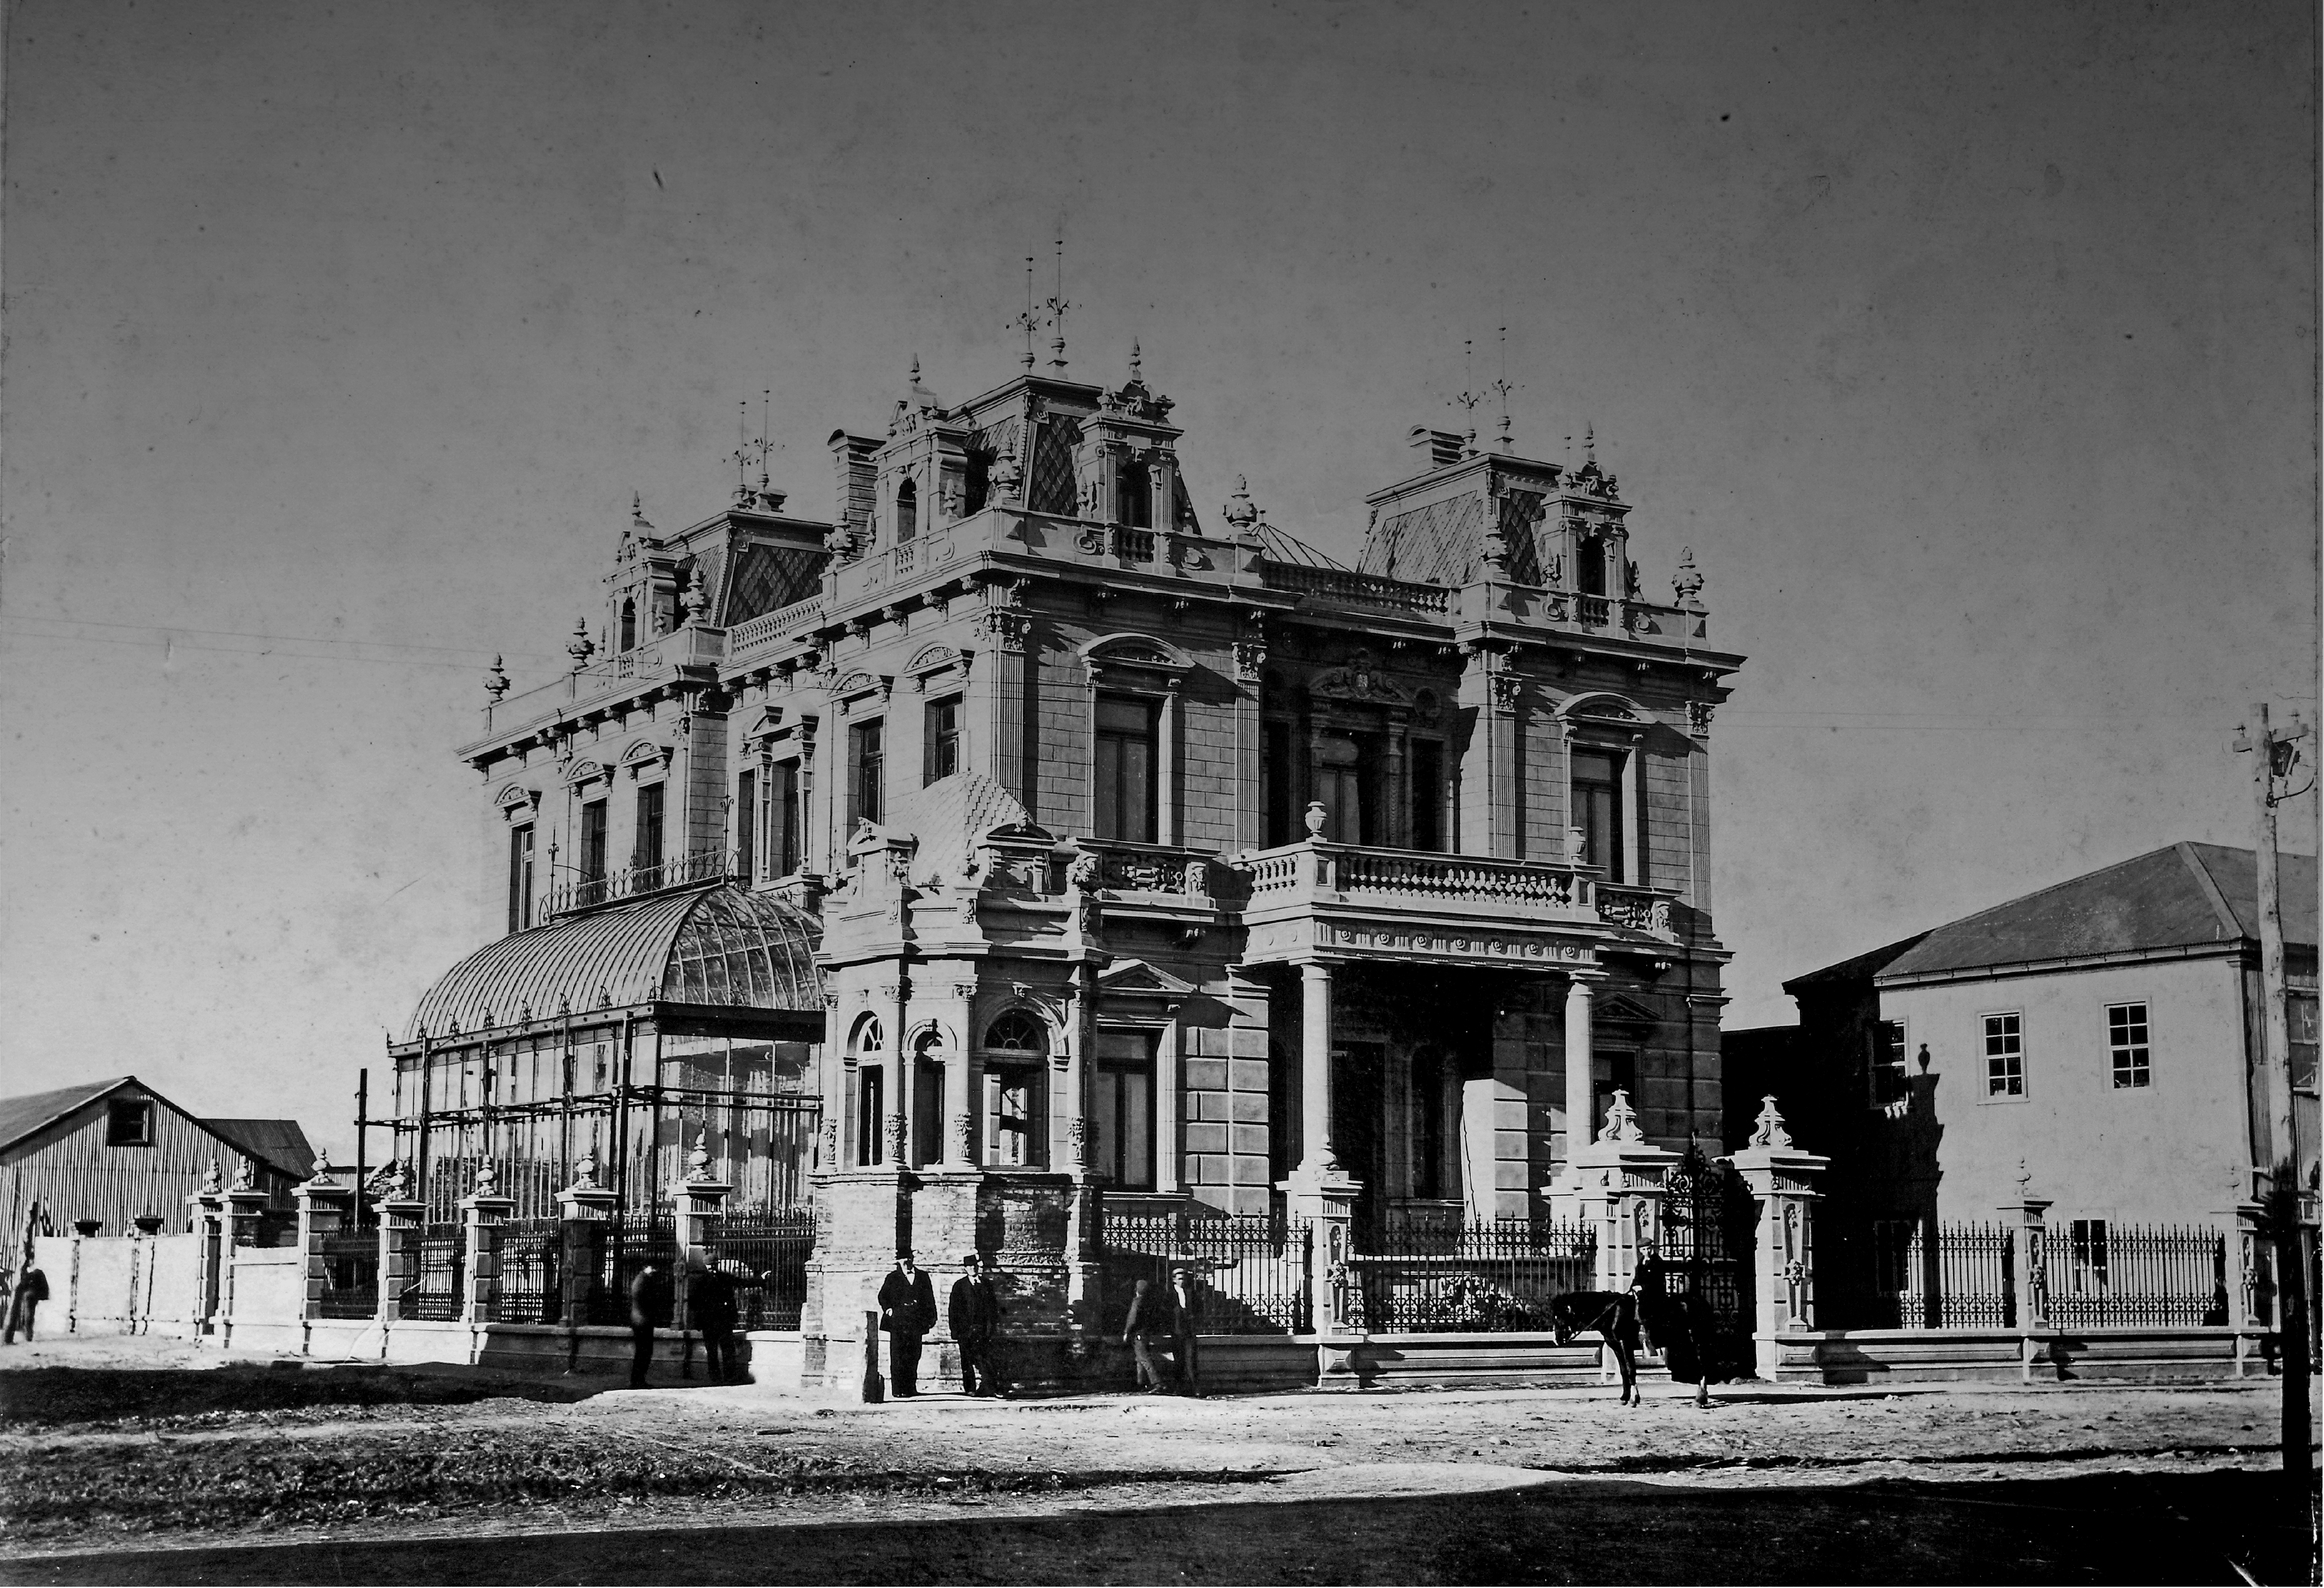 El palacio Sara Braun donde está ubicado Taberna Club de la Unión fue construido entre los años 1895 y 1905